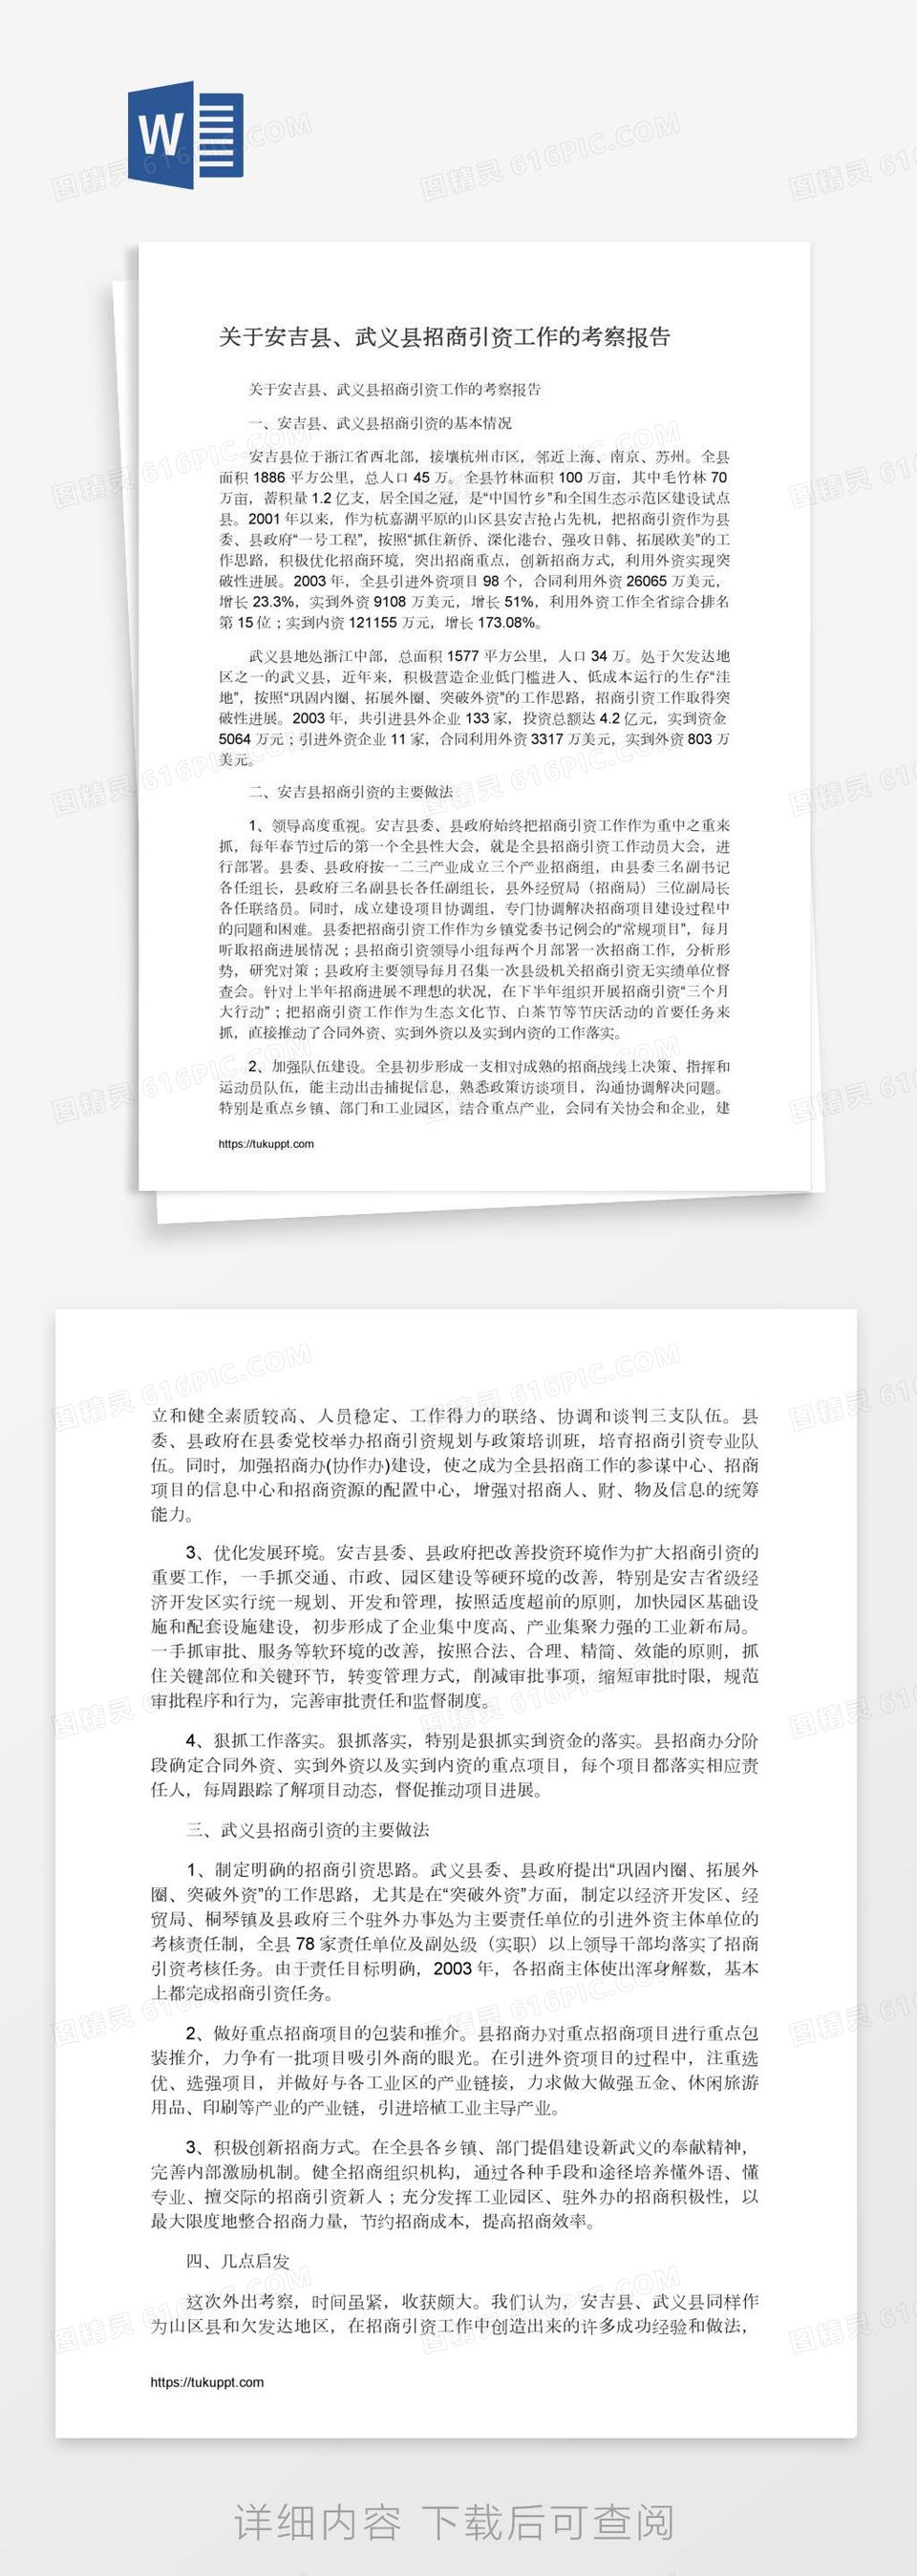 关于安吉县、武义县招商引资工作的考察报告